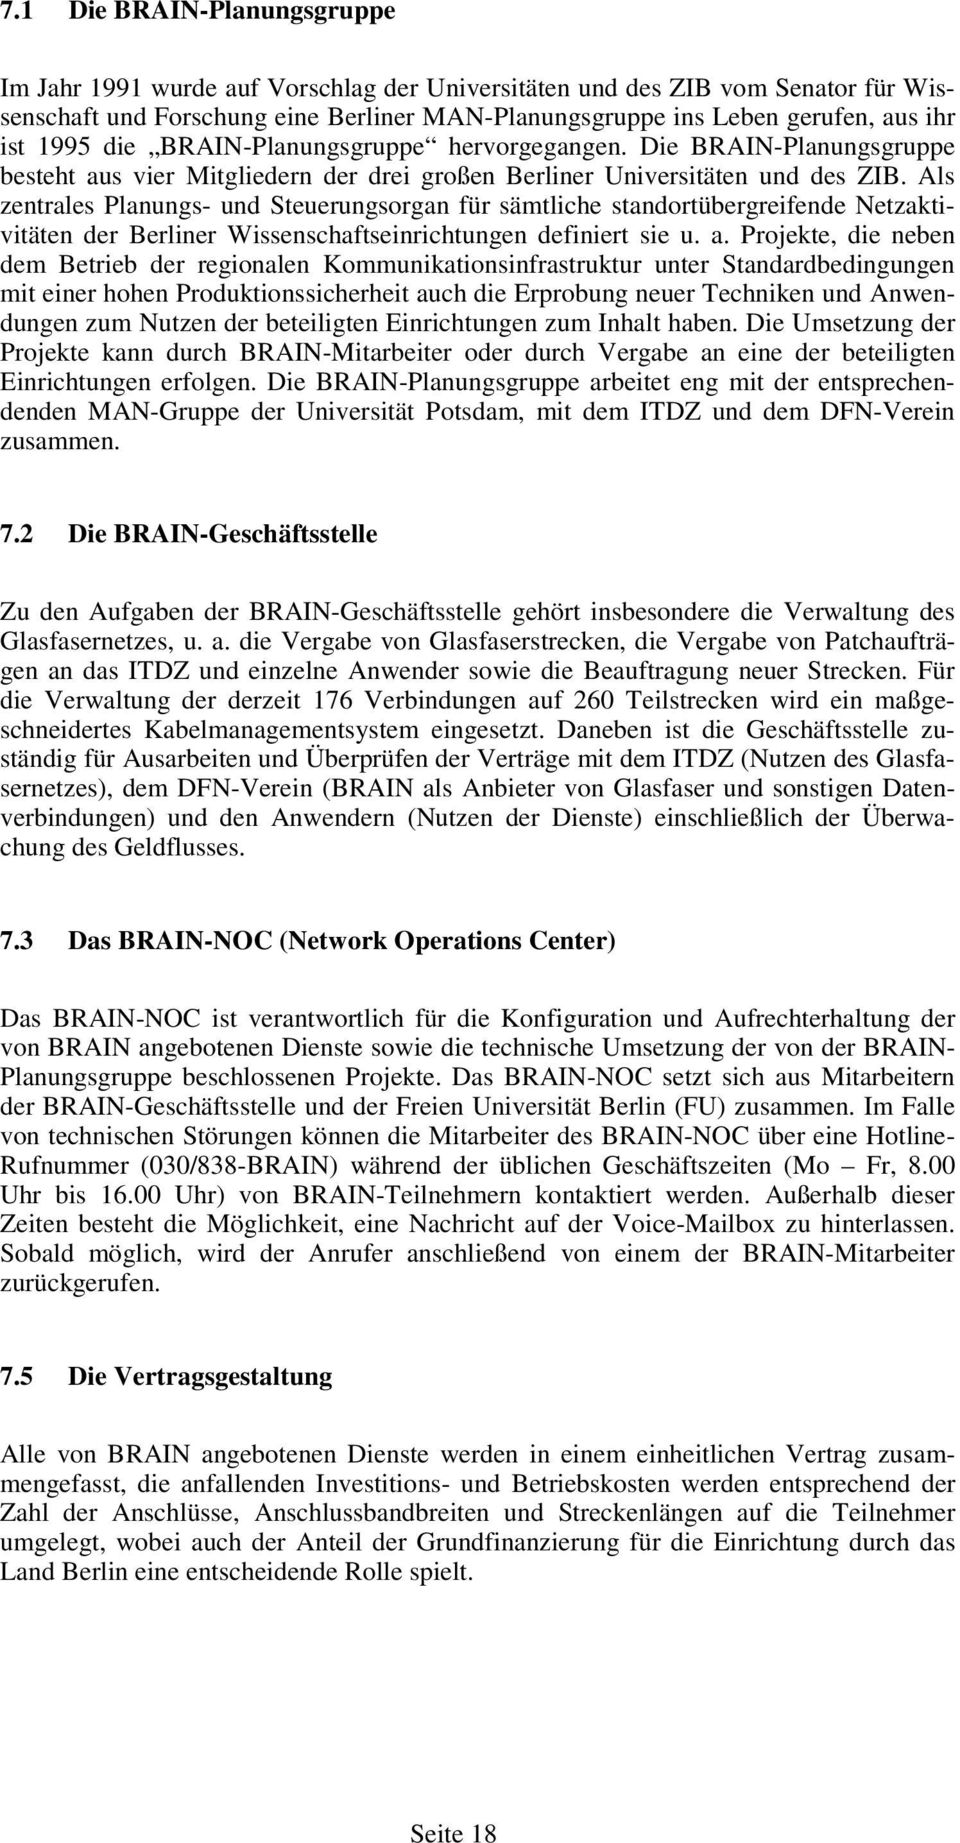 Als zentrales Planungs- und Steuerungsorgan für sämtliche standortübergreifende Netzaktivitäten der Berliner Wissenschaftseinrichtungen definiert sie u. a.